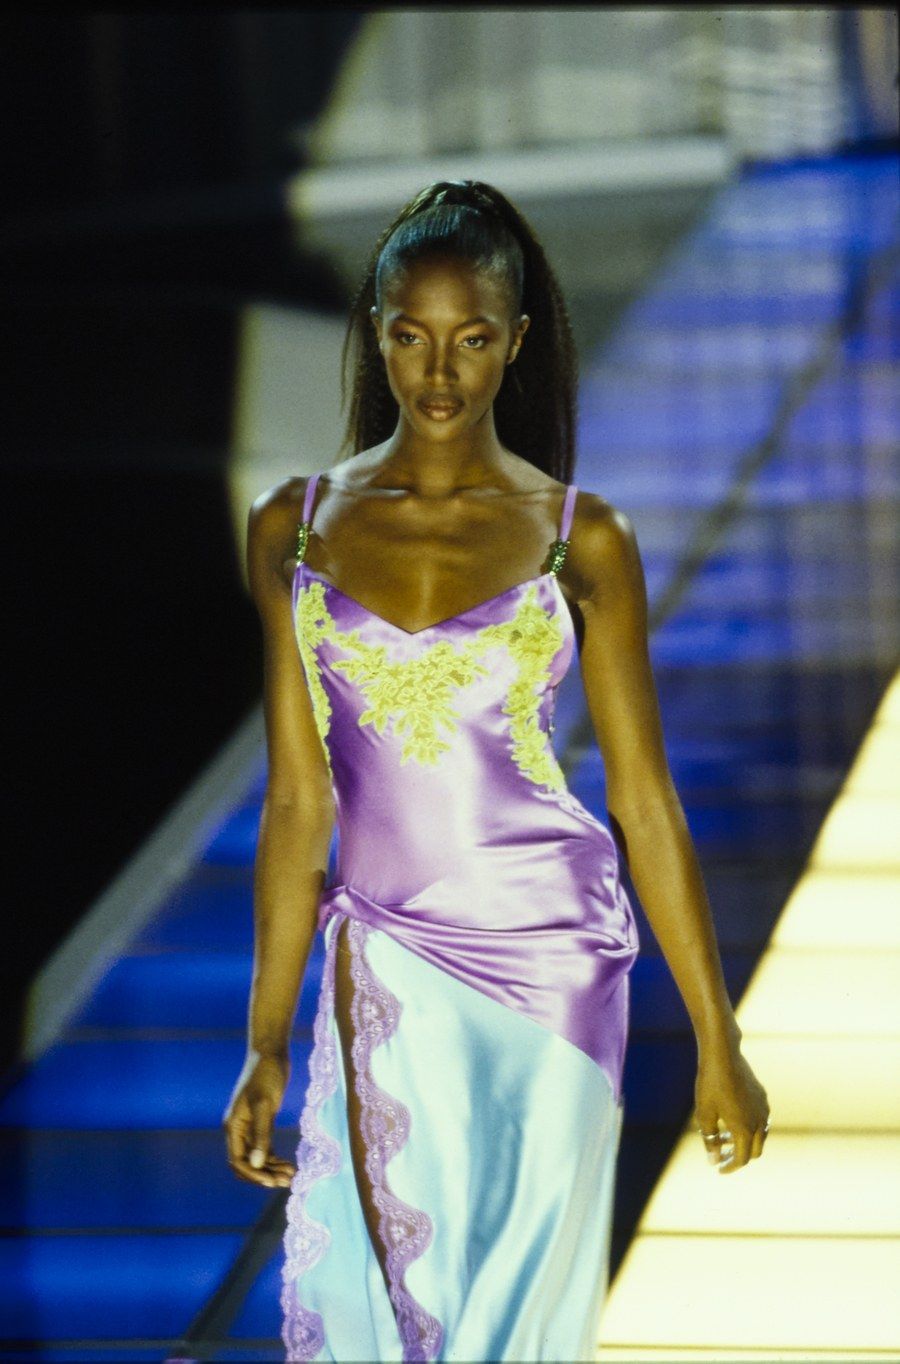 Một thiết kế nổi bật khác phải kể đến là mẫu váy hai dây của Versace ra mắt lần đầu khi Naomi Campbell trình diễn trong show năm 1996. Vẻ đẹp duyên dáng của Naomi trong thiết kế tone xanh tím đáp ren đã để lại ấn tượng sâu đậm trong lòng khán giả. 